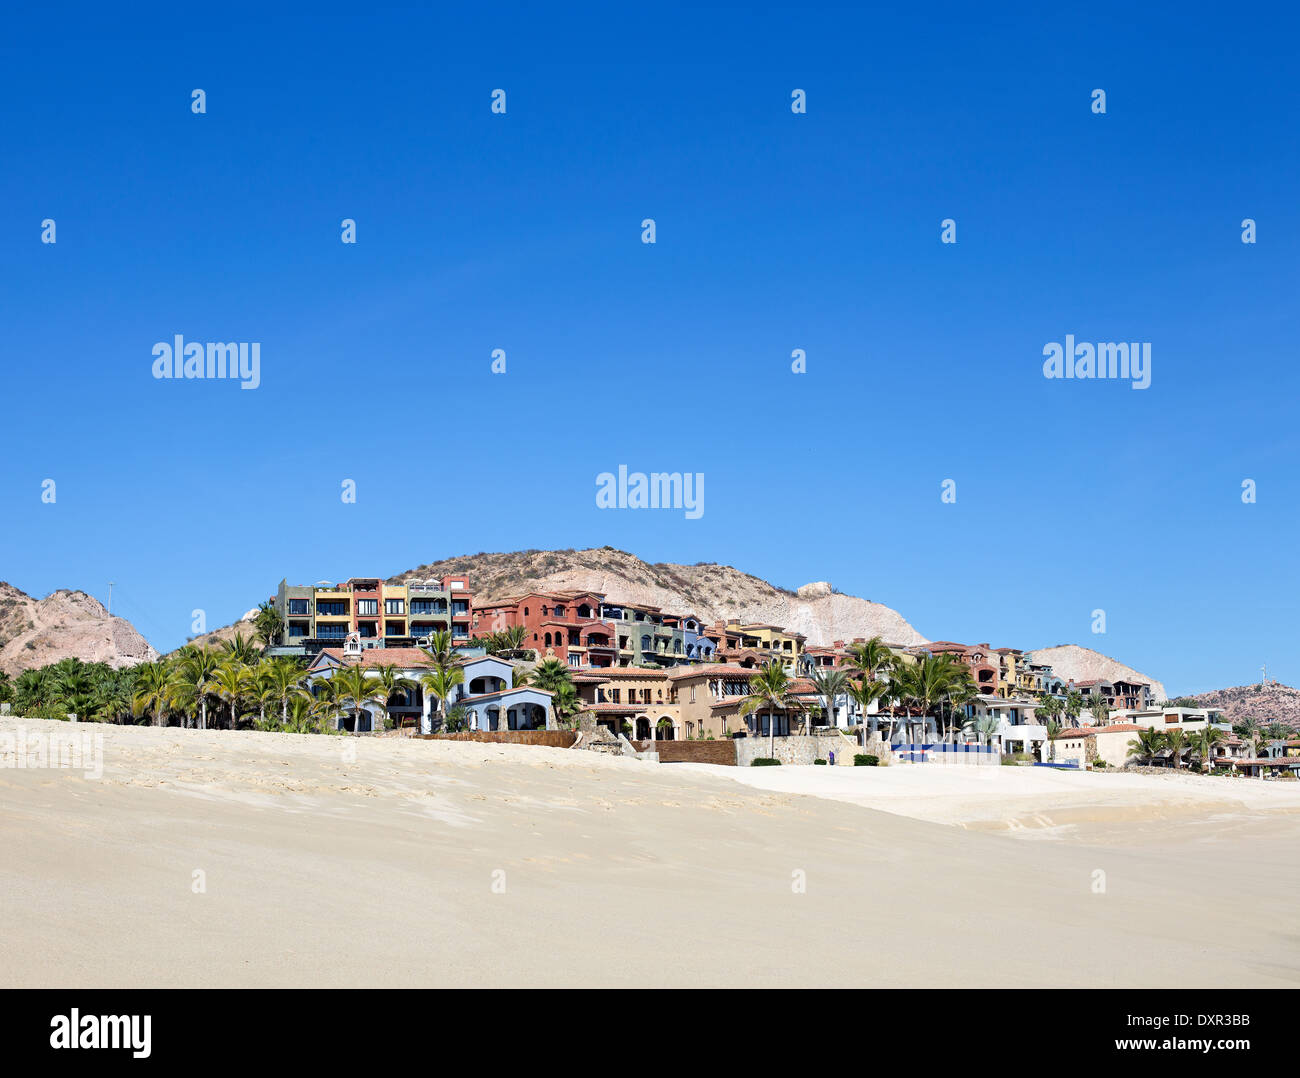 village on the beach Stock Photo